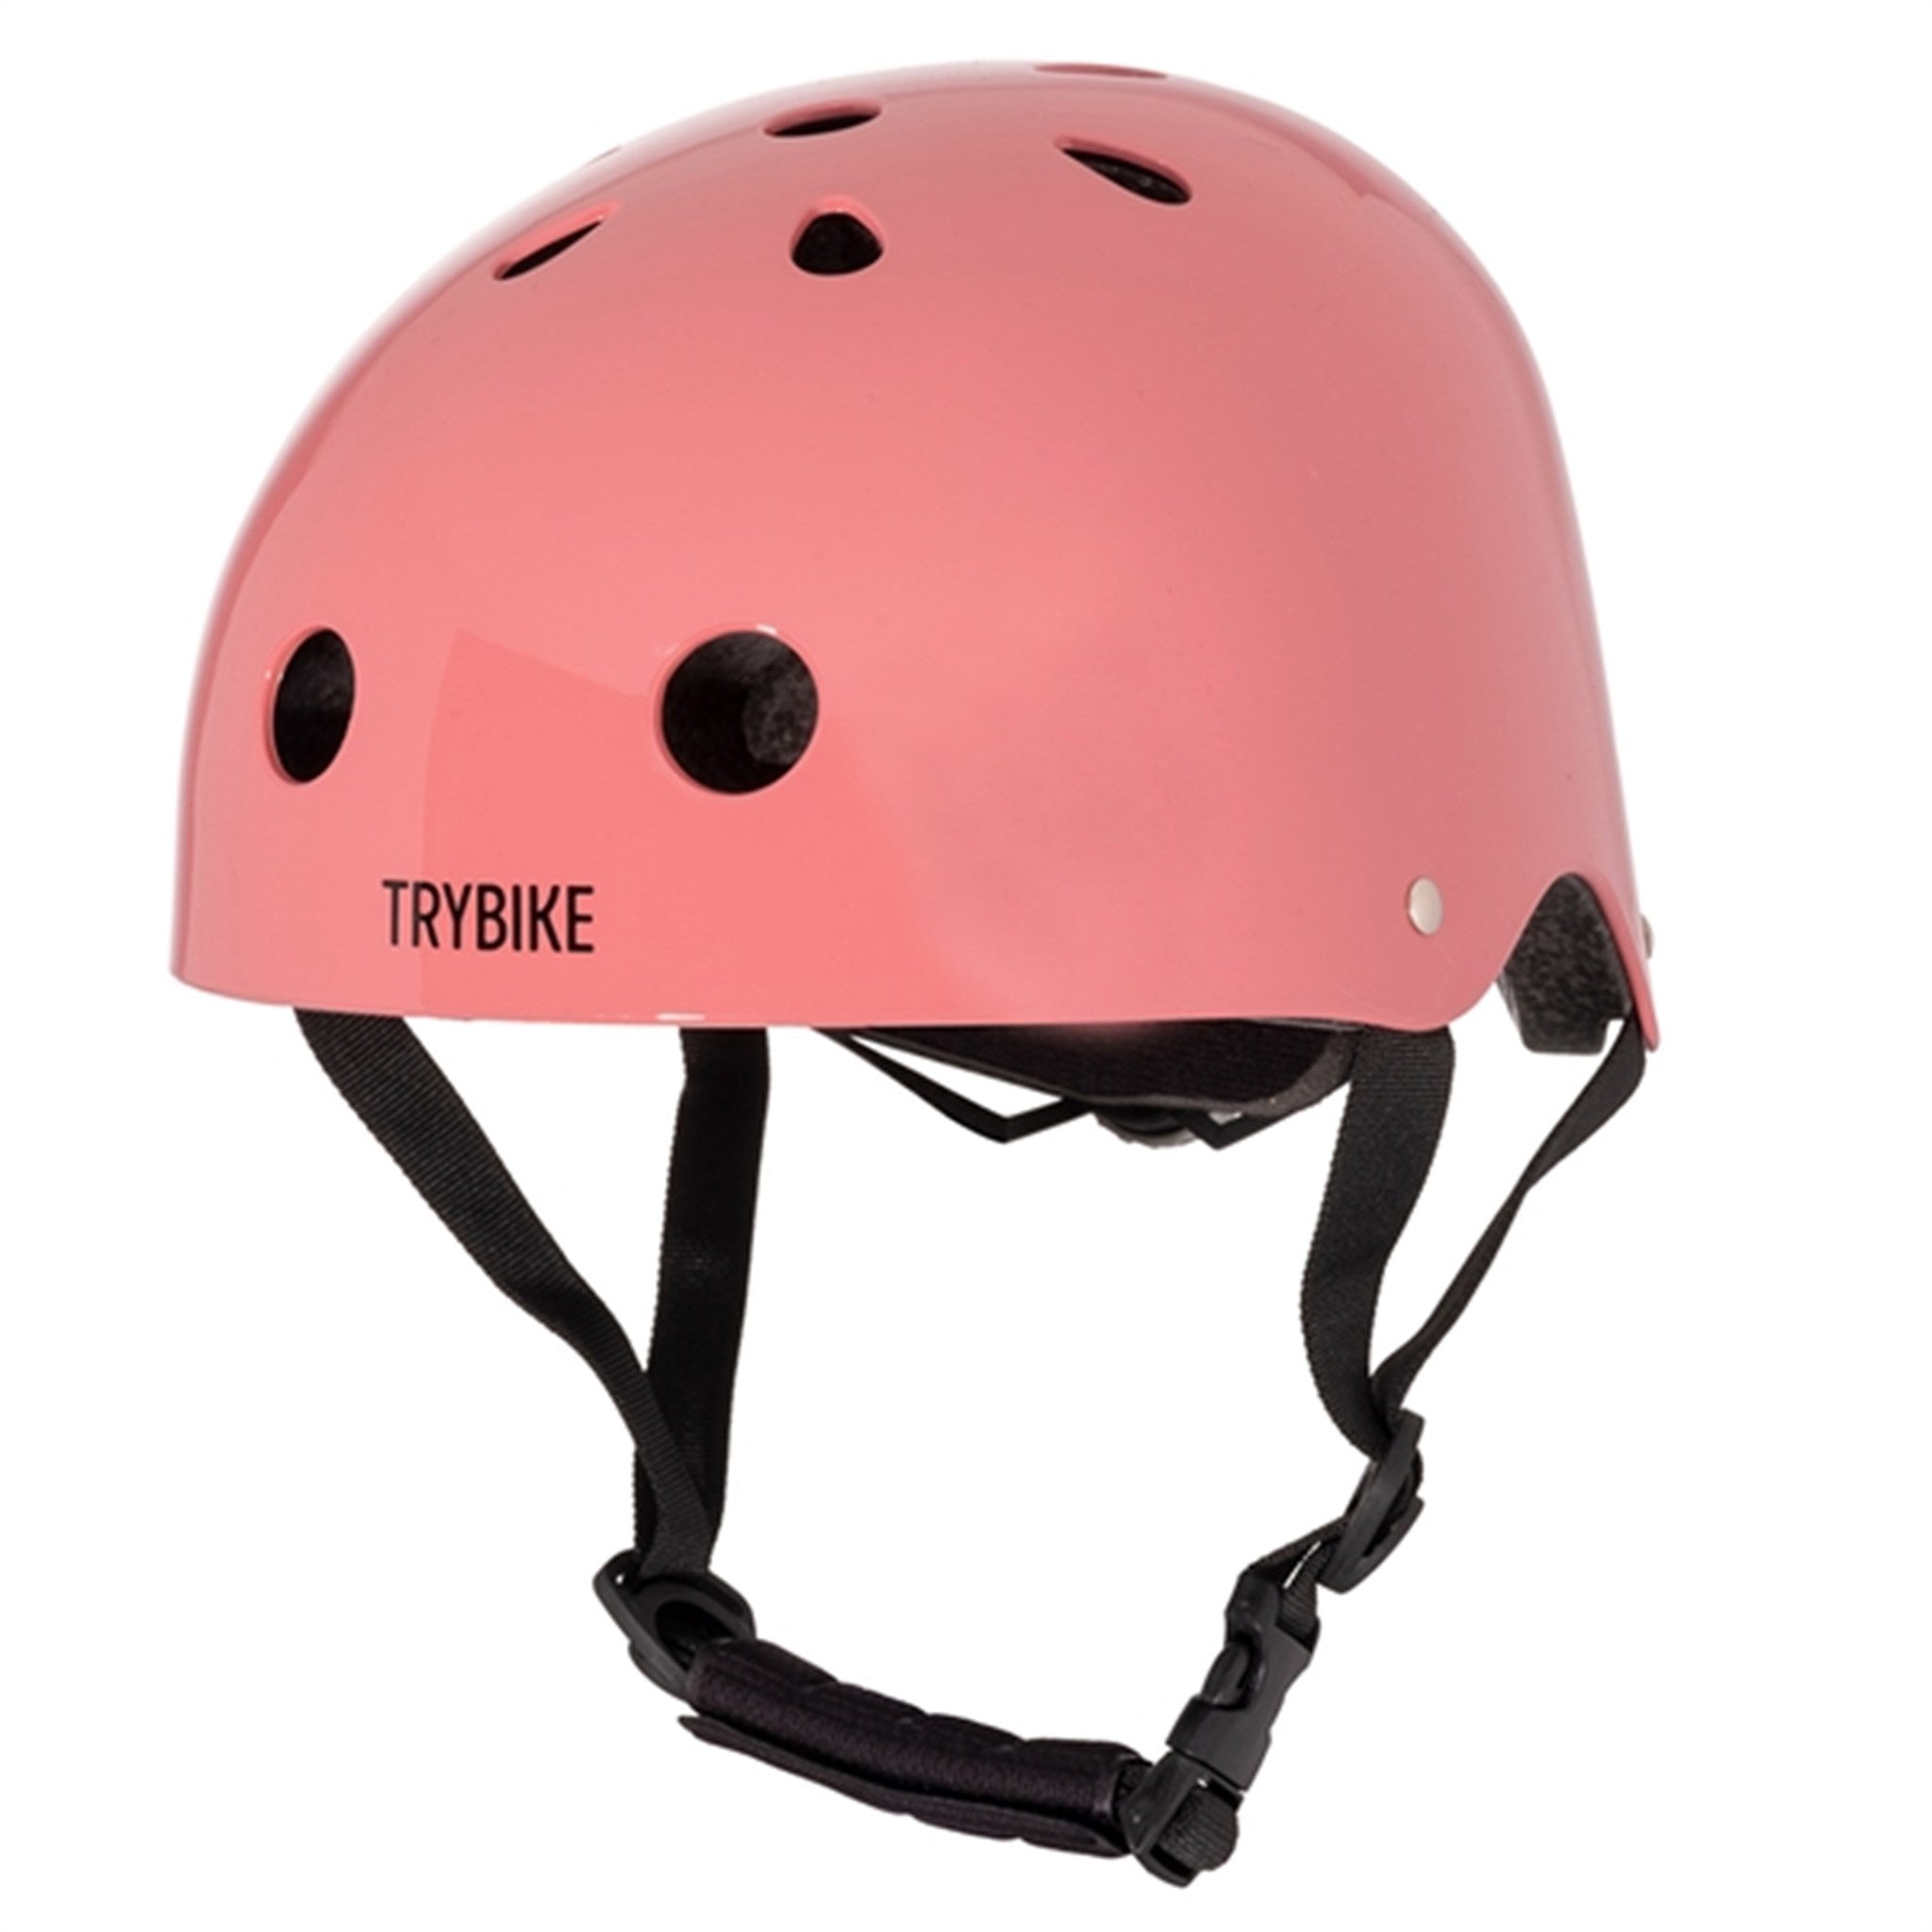 Trybike CoConut Jaipur Pink Helmet Retro Look